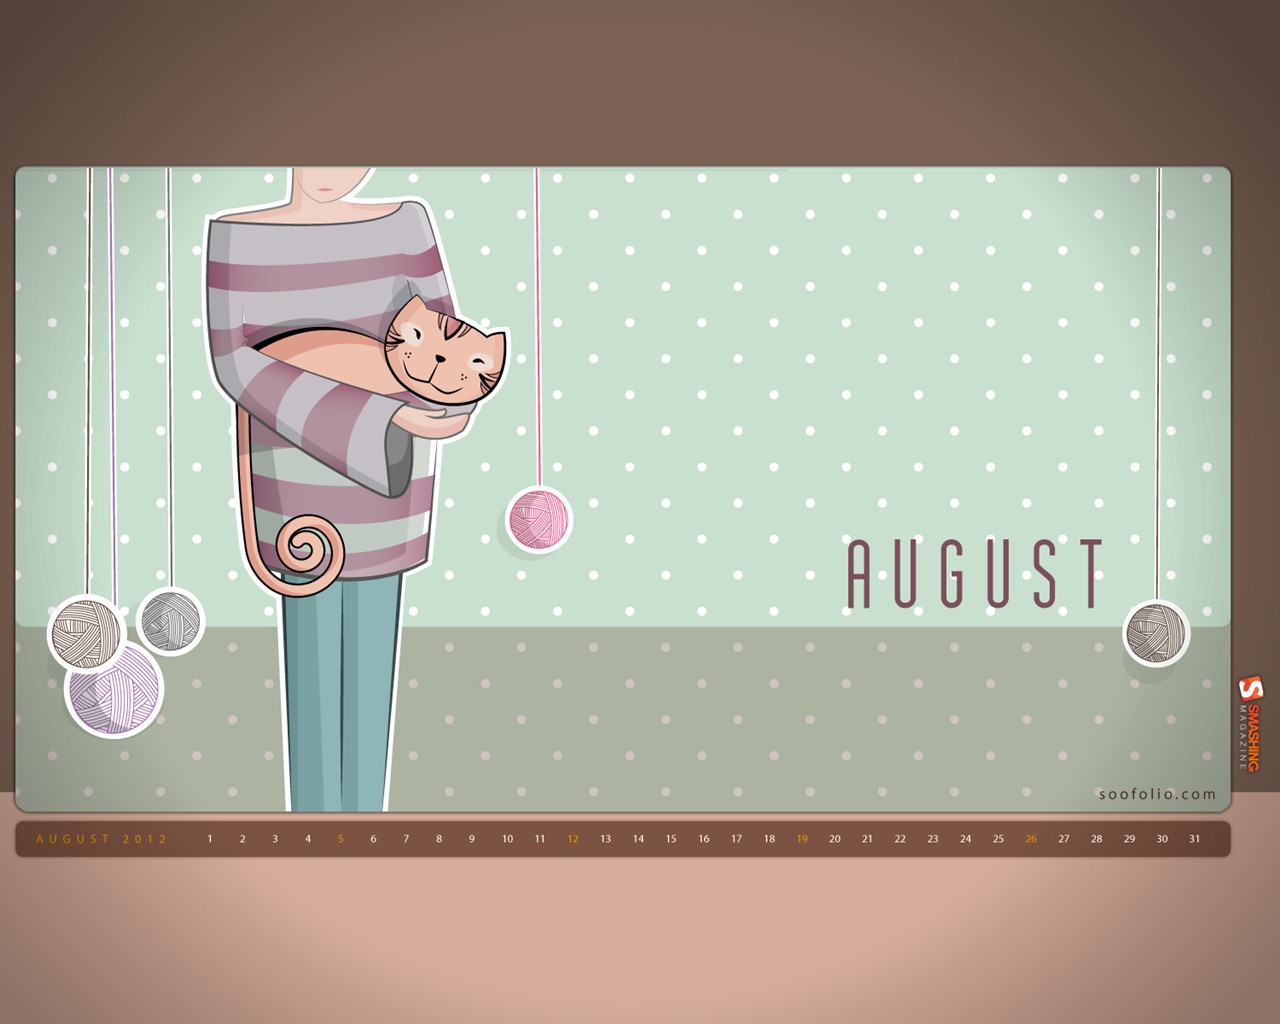 August 2012 Calendar wallpapers (1) #12 - 1280x1024